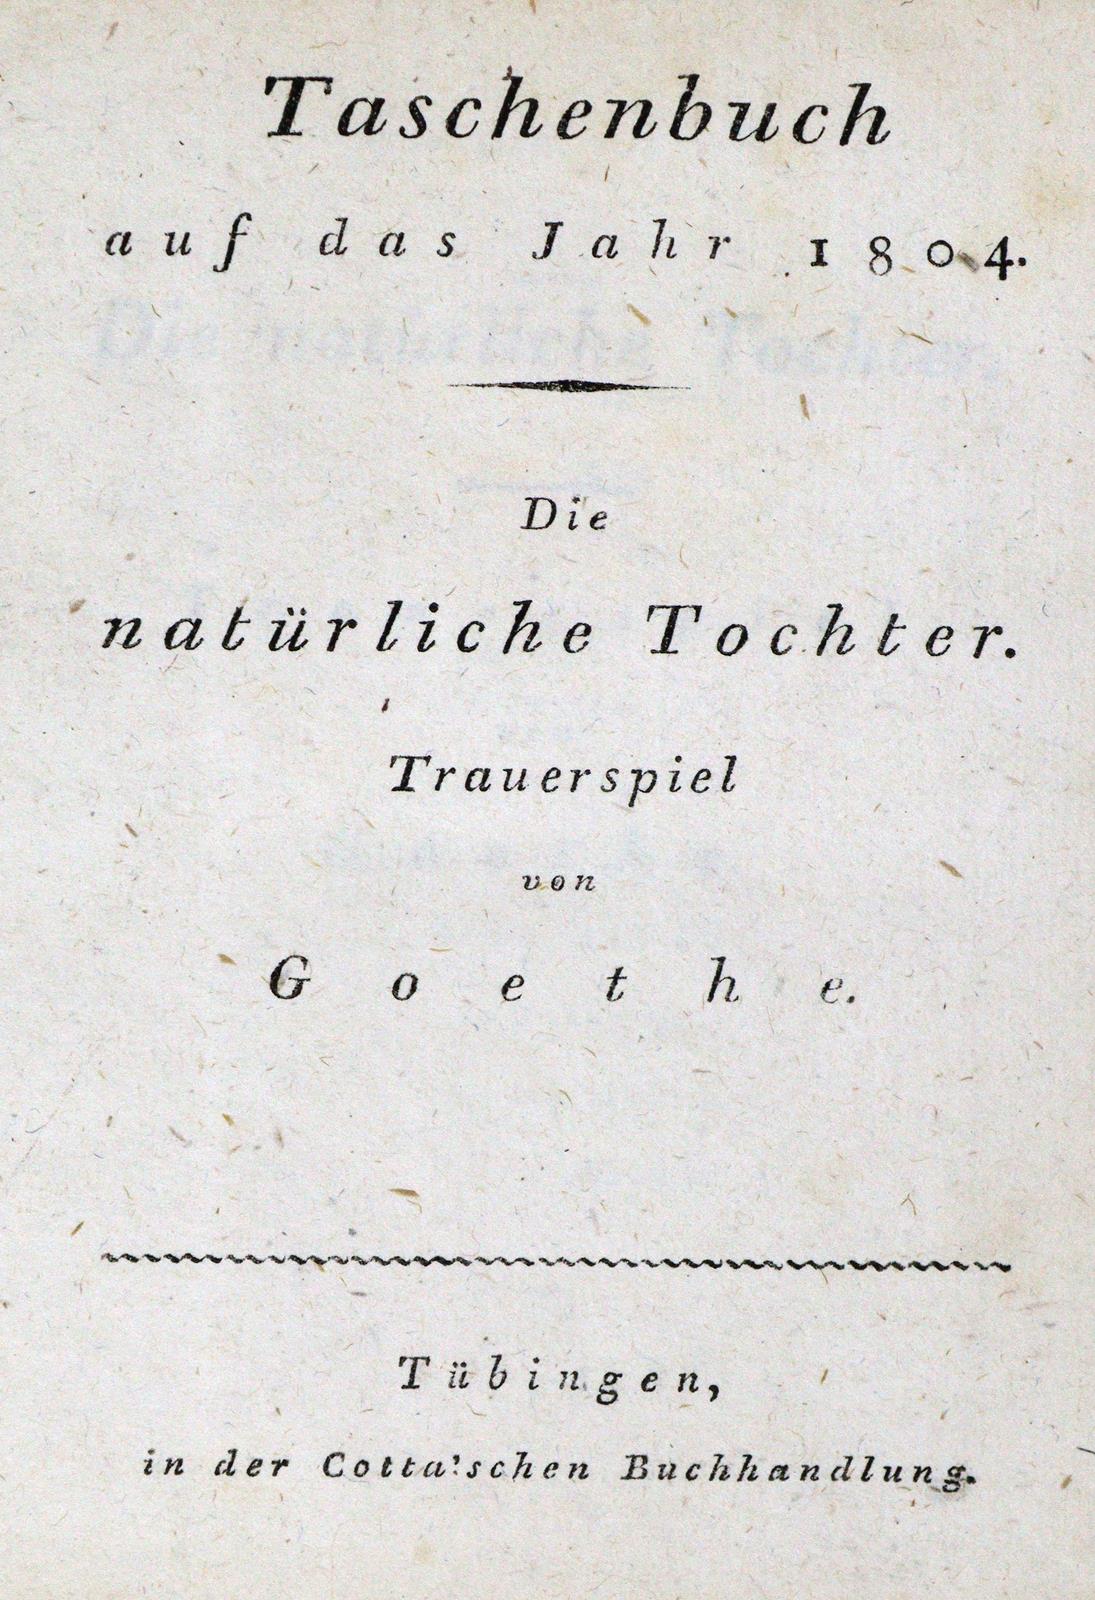 Taschenbuch für 1804. | Bild Nr.1